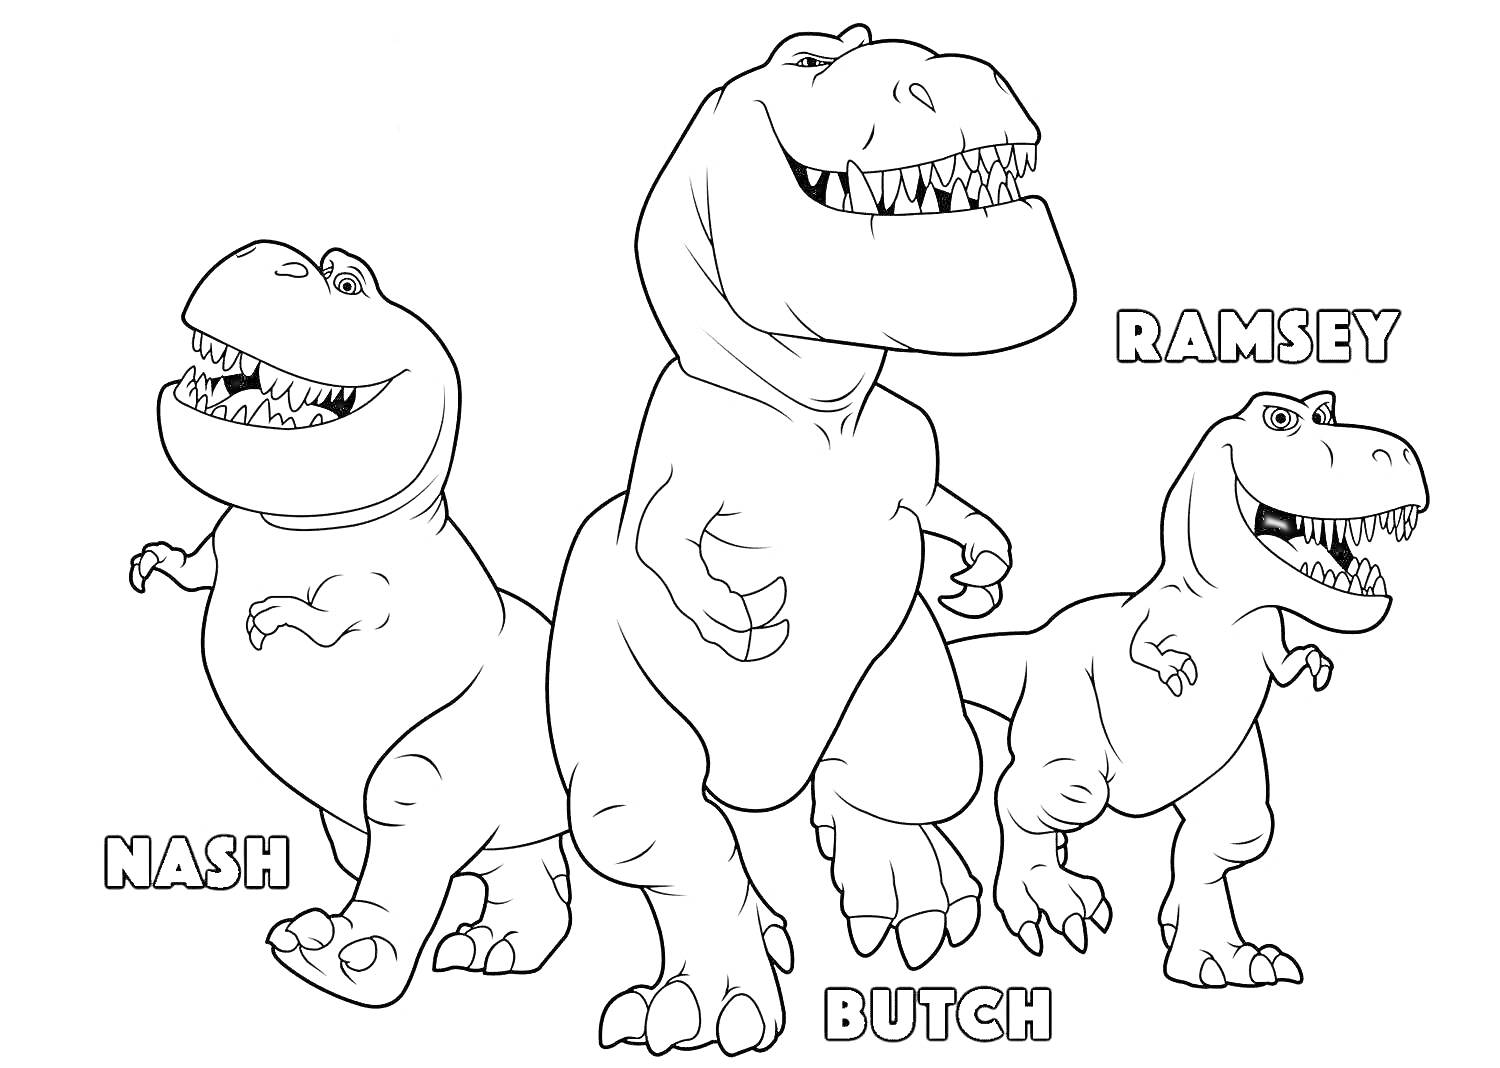 РаскраскаТри динозавра (Nash, Butch и Ramsey)